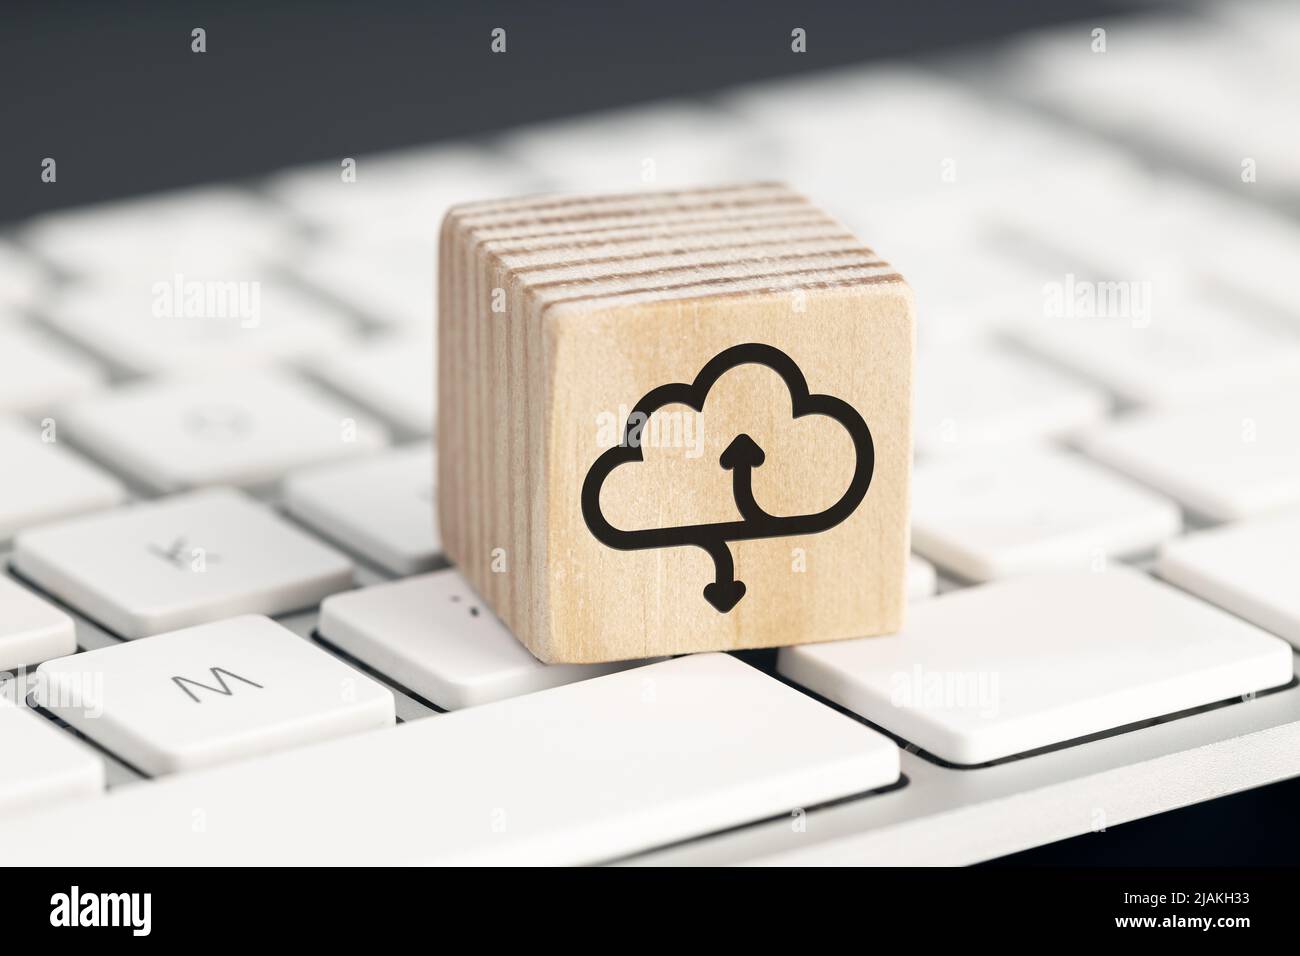 Icône Cloud computing sur un bloc en bois sur le clavier de l'ordinateur Banque D'Images